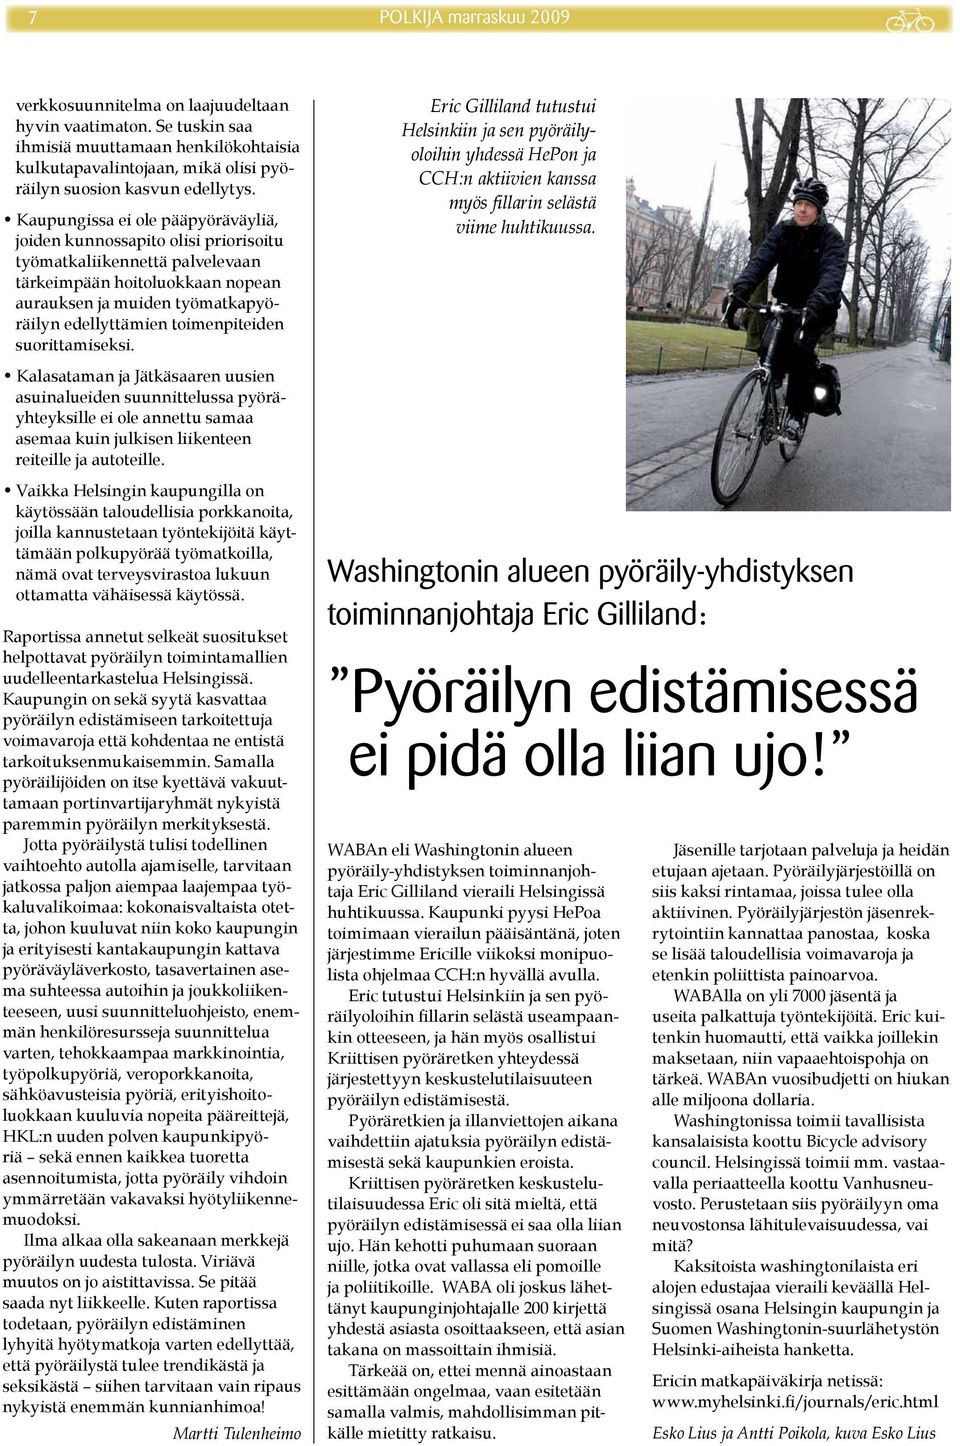 toimenpiteiden suorittamiseksi. Kalasataman ja Jätkäsaaren uusien asuinalueiden suunnittelussa pyöräyhteyksille ei ole annettu samaa asemaa kuin julkisen liikenteen reiteille ja autoteille.